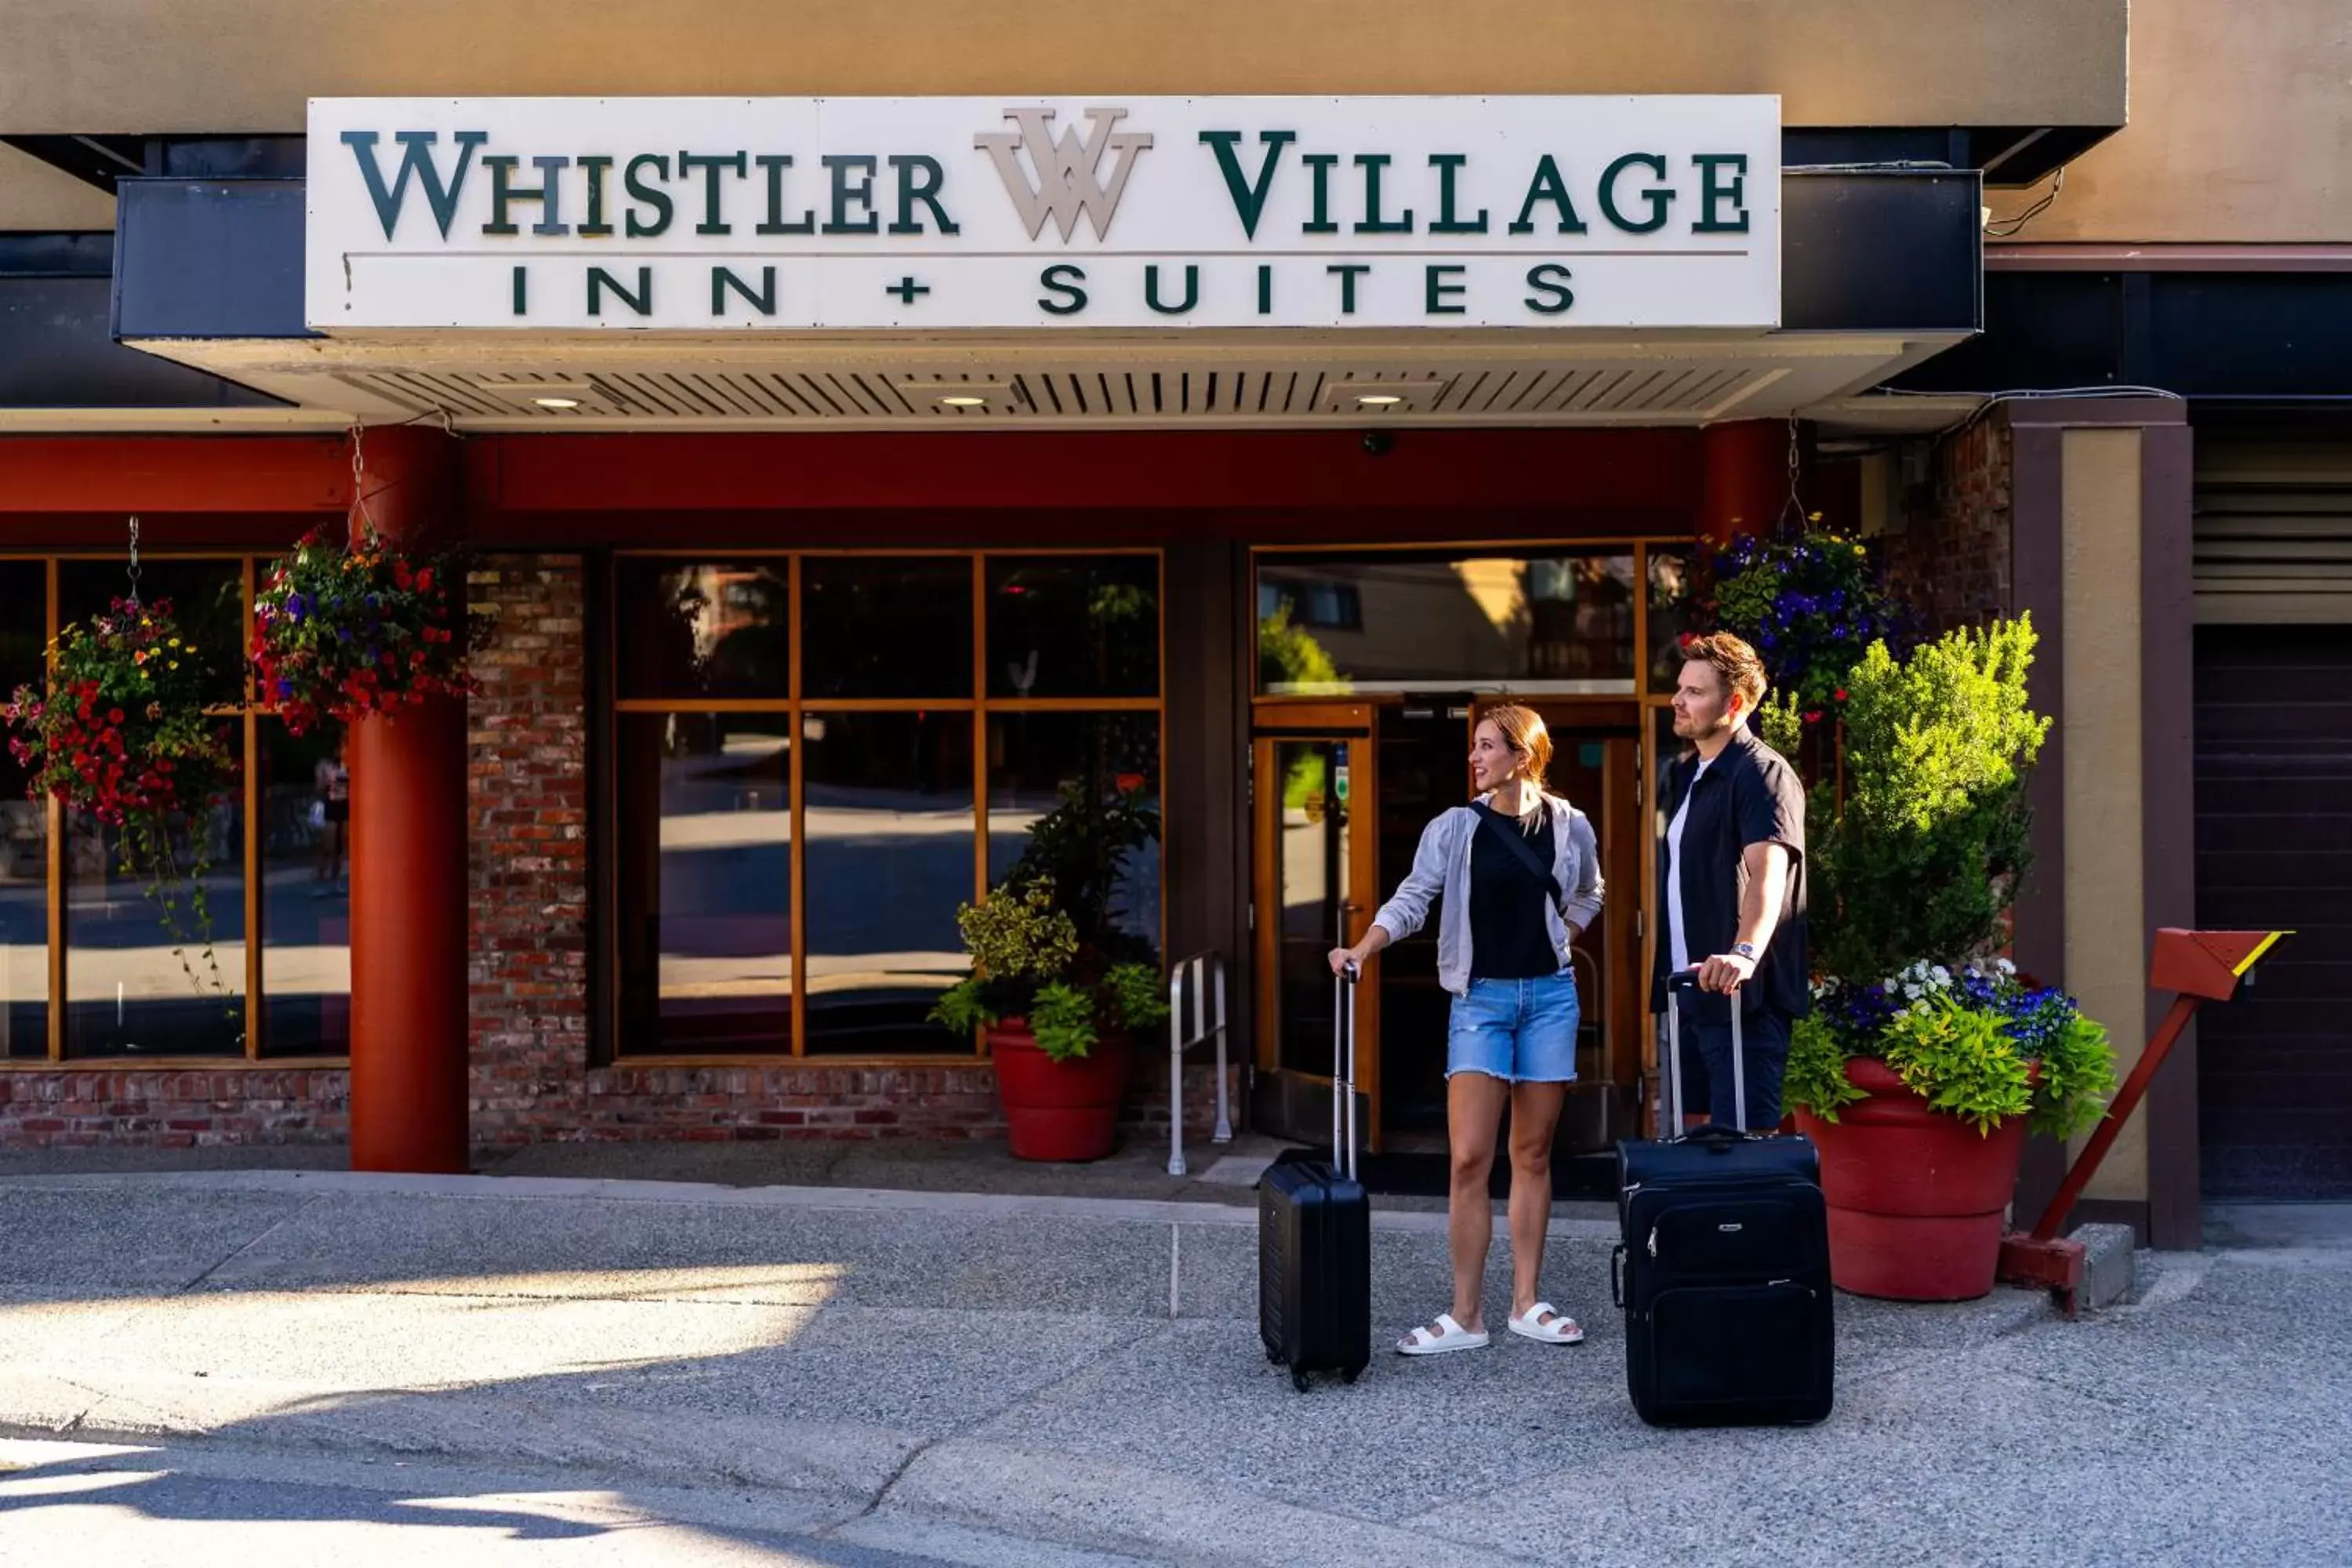 Facade/entrance in Whistler Village Inn & Suites